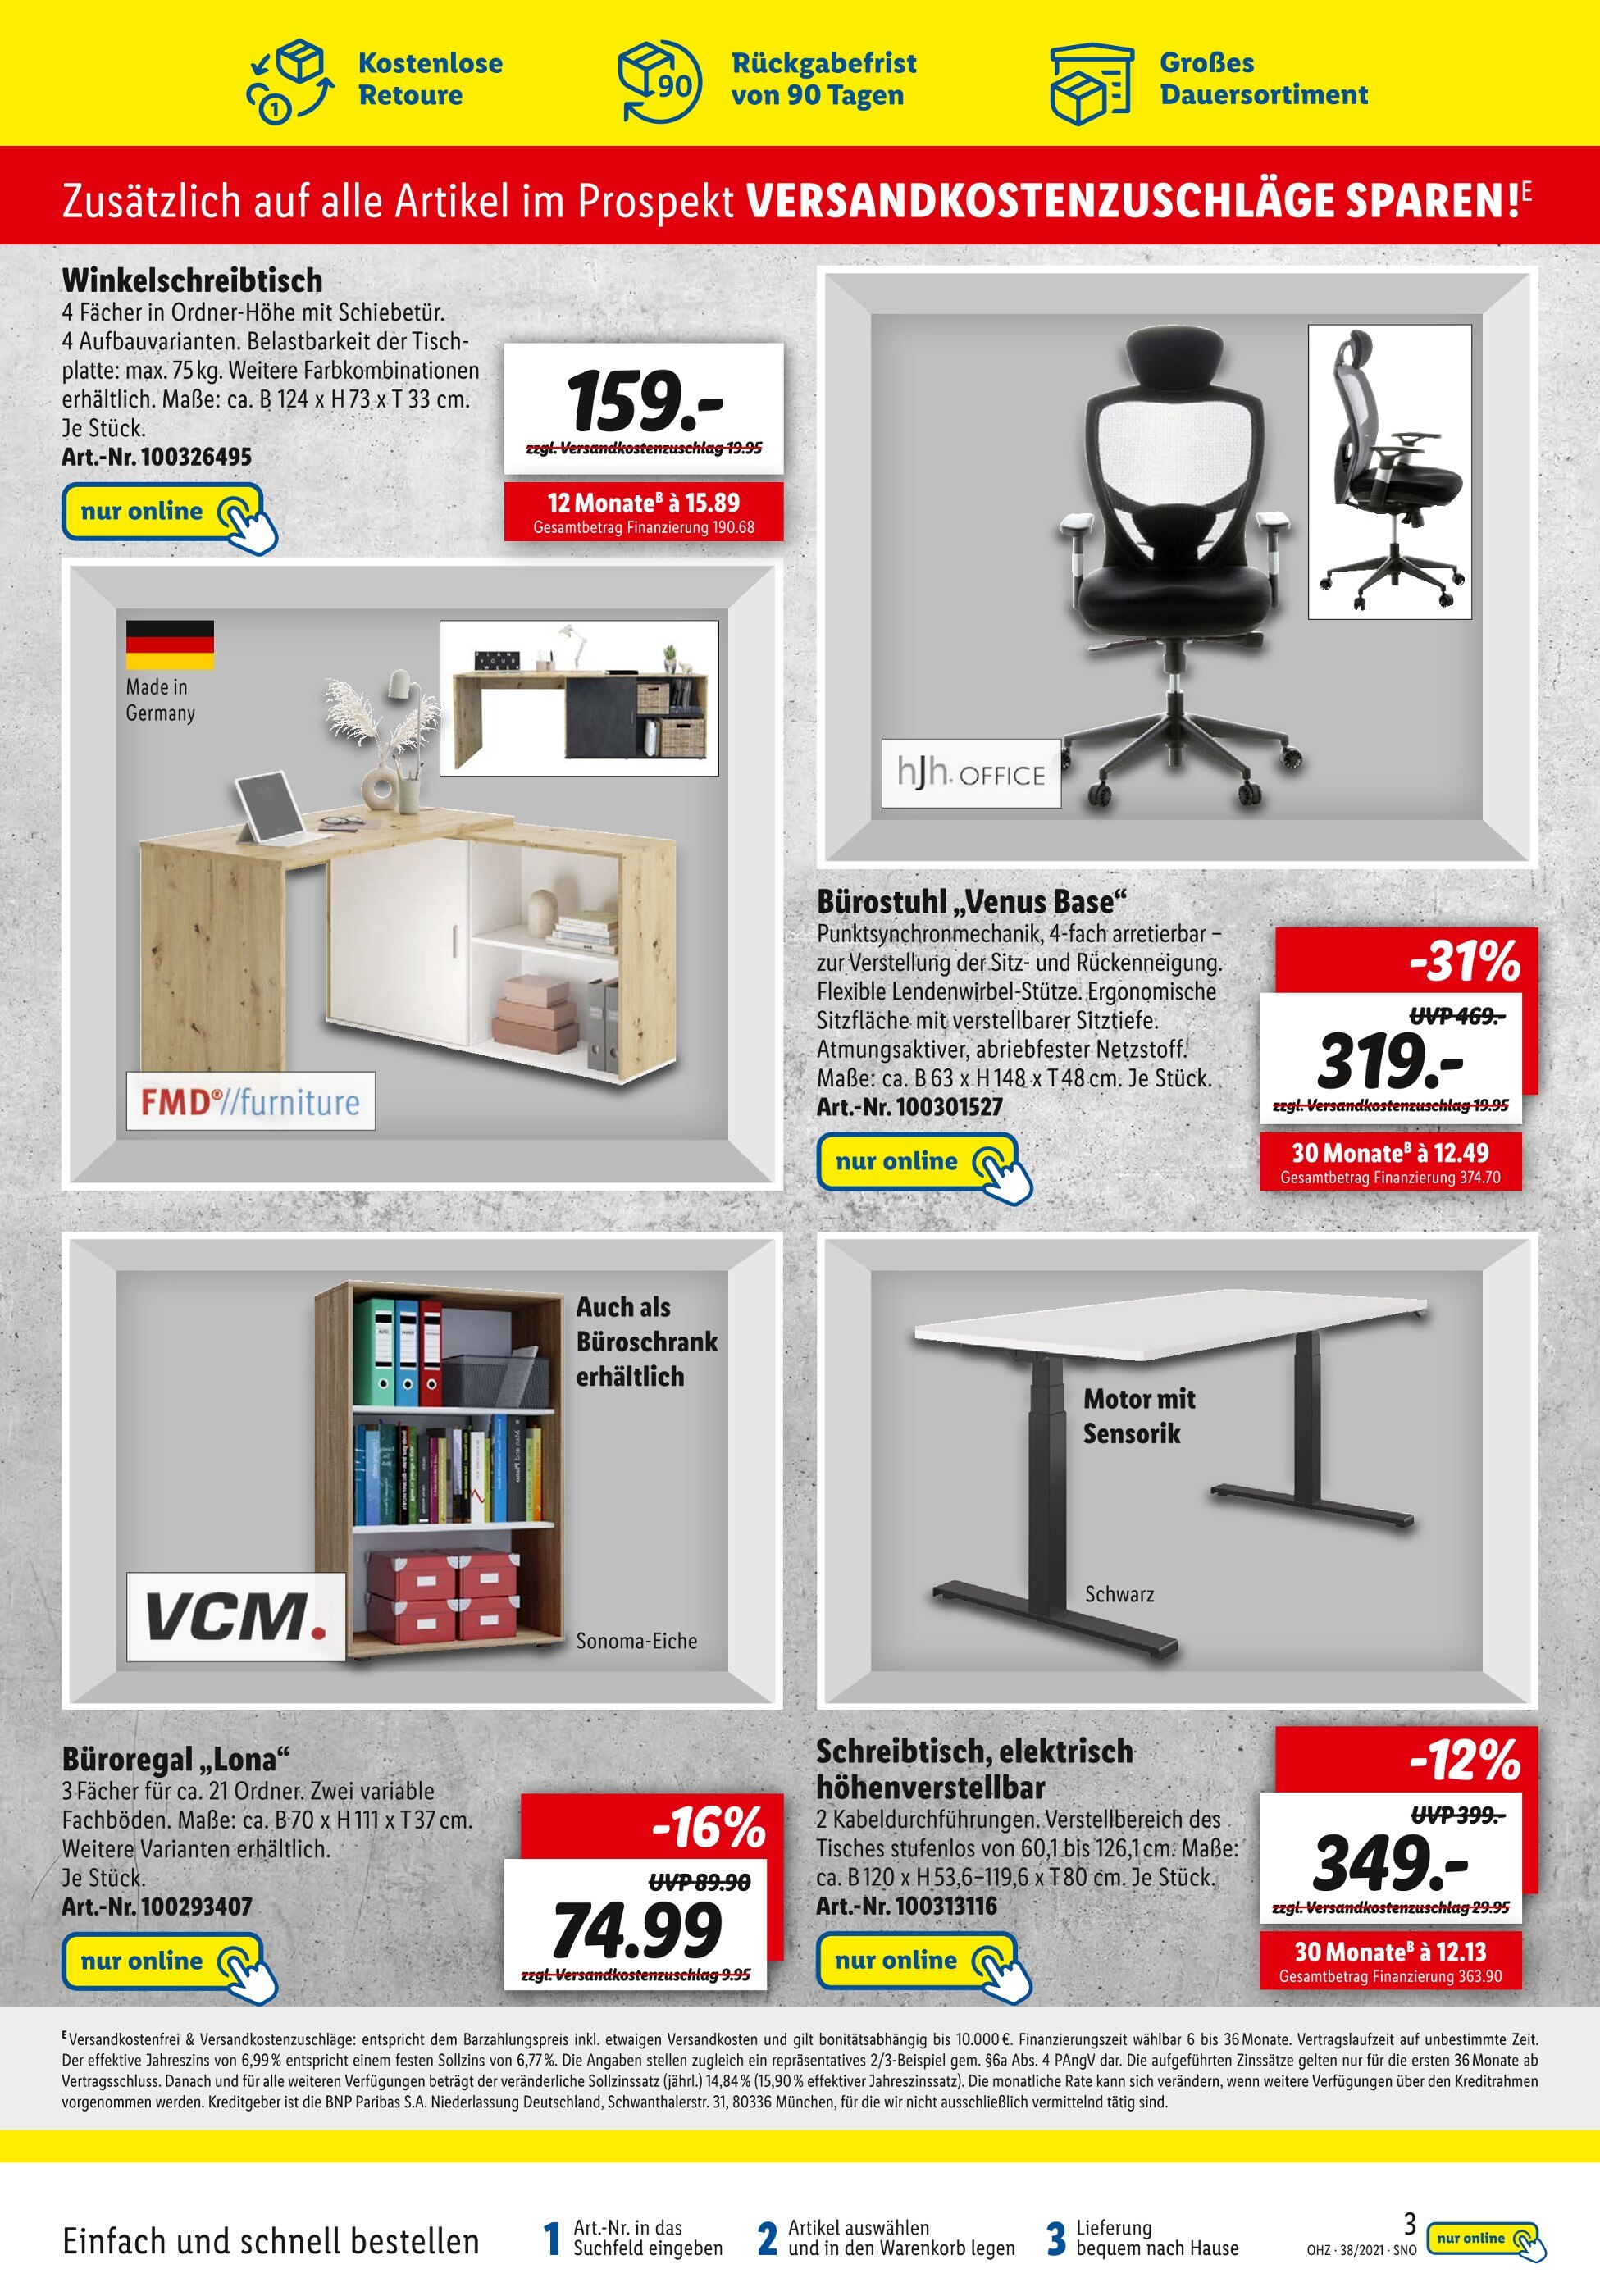 Schreibtisch kaufen Mühlhausen günstige Angebote in